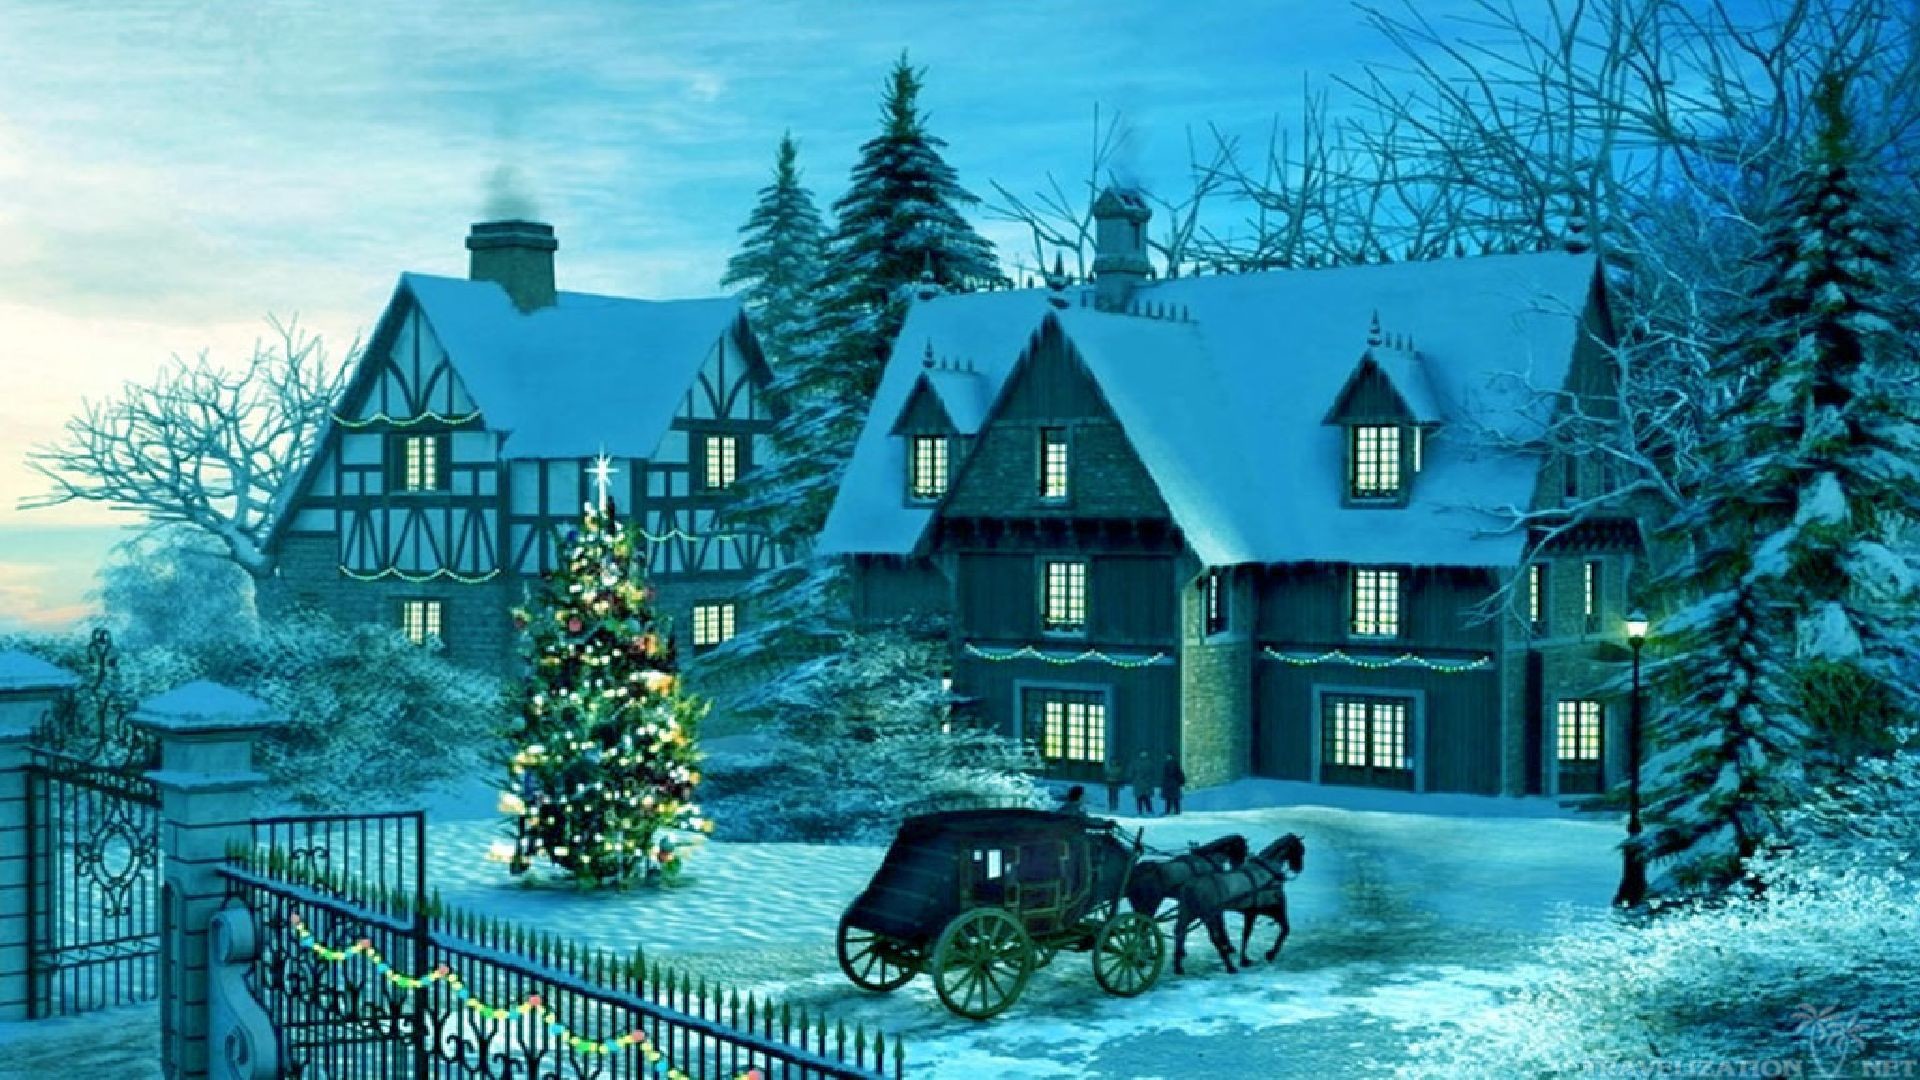 1920x1080 ... 1920Ã1080 and 2560Ã1920. Beautiful Winter Christmas Carriage Wallpapers.  Beautiful Winter Christmas Carriage Wallpapers